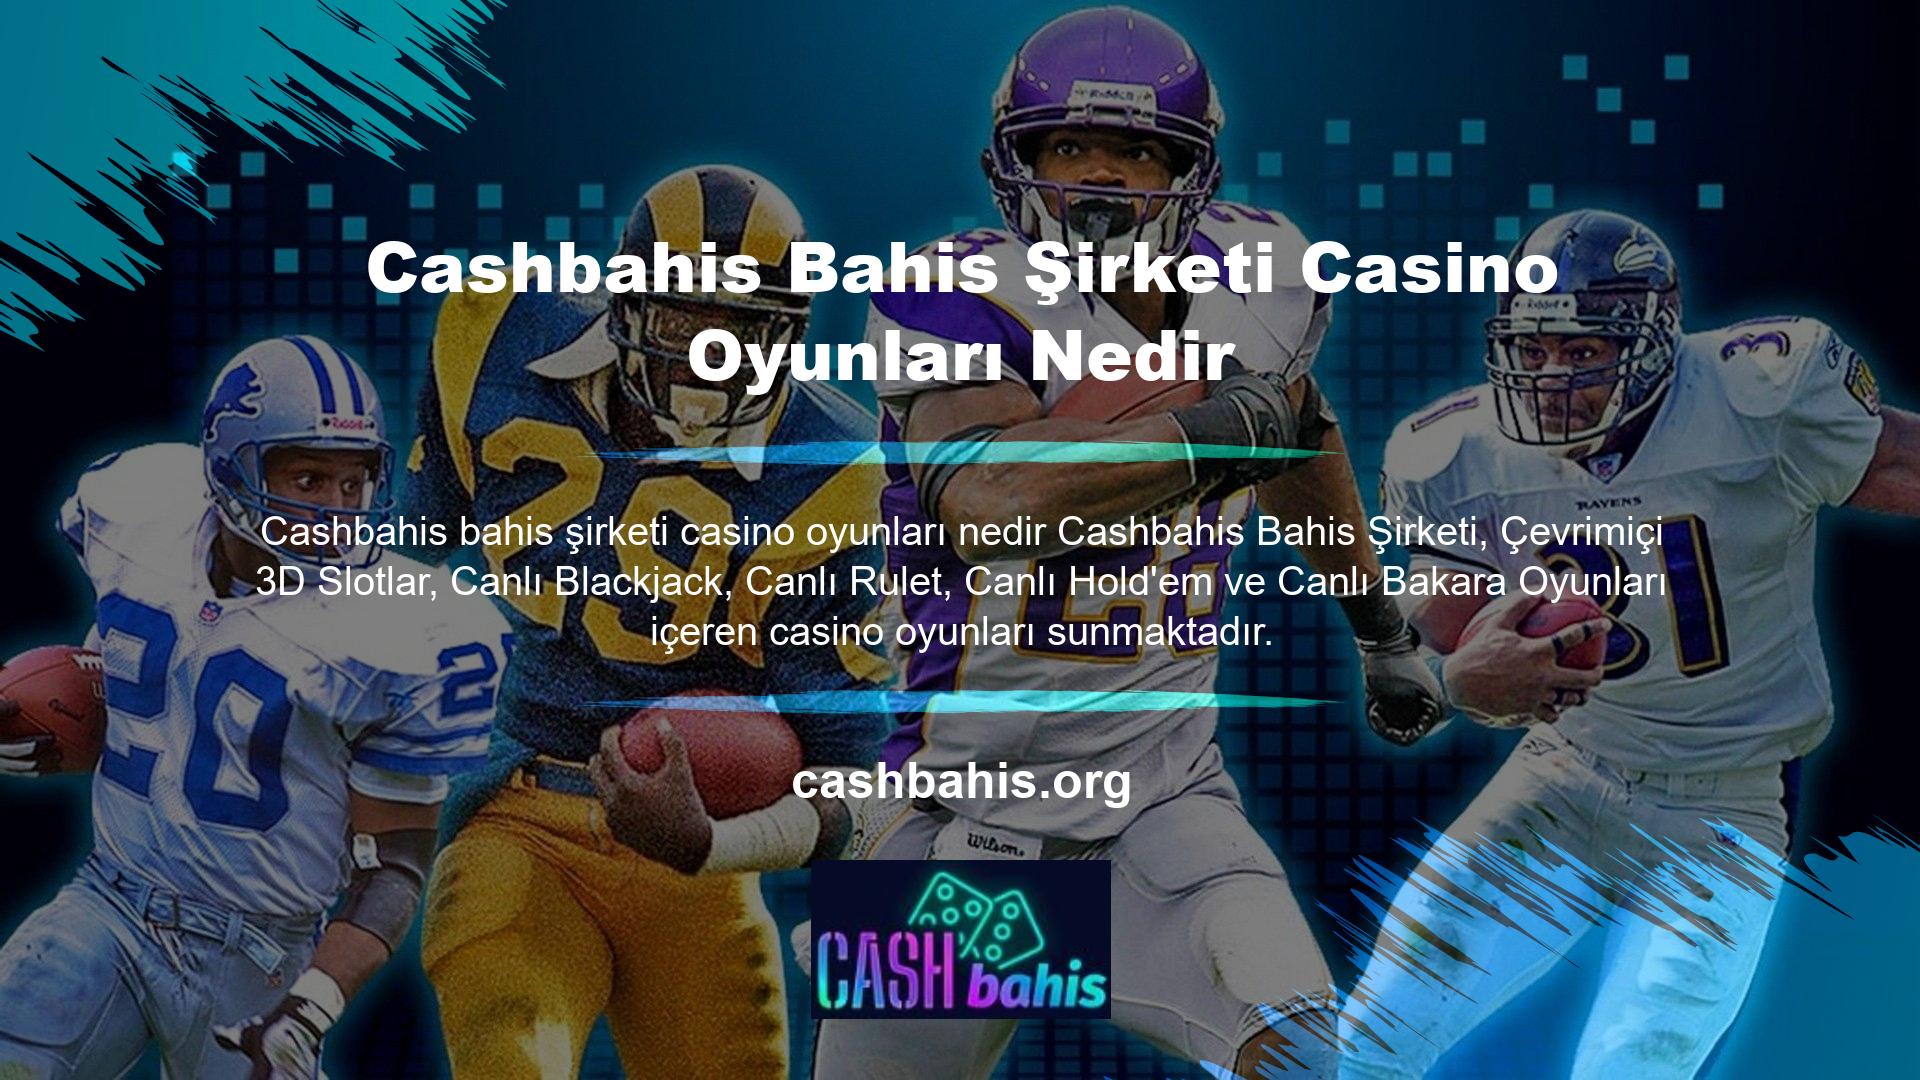 Cashbahis Bahis, kullanıcılarına sürükleyici bir deneyim sunarak, Türkiye ve bölgedeki çoğu ülkede standartları aşan birinci sınıf bir hizmet sunmaya devam ediyor